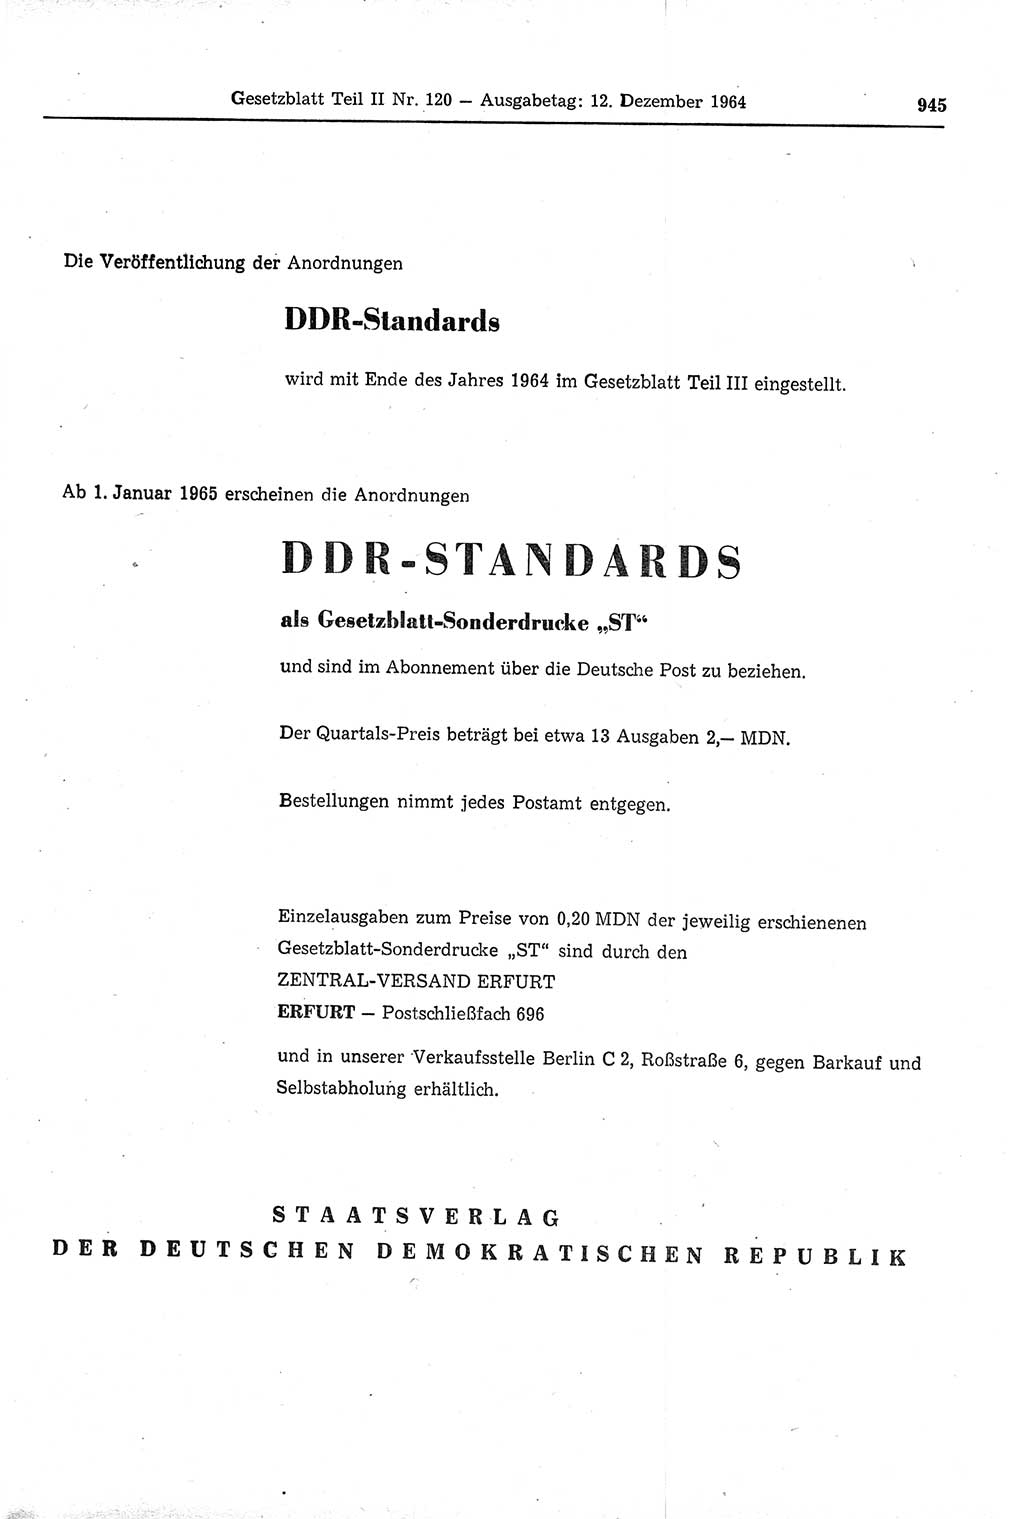 Gesetzblatt (GBl.) der Deutschen Demokratischen Republik (DDR) Teil ⅠⅠ 1964, Seite 945 (GBl. DDR ⅠⅠ 1964, S. 945)